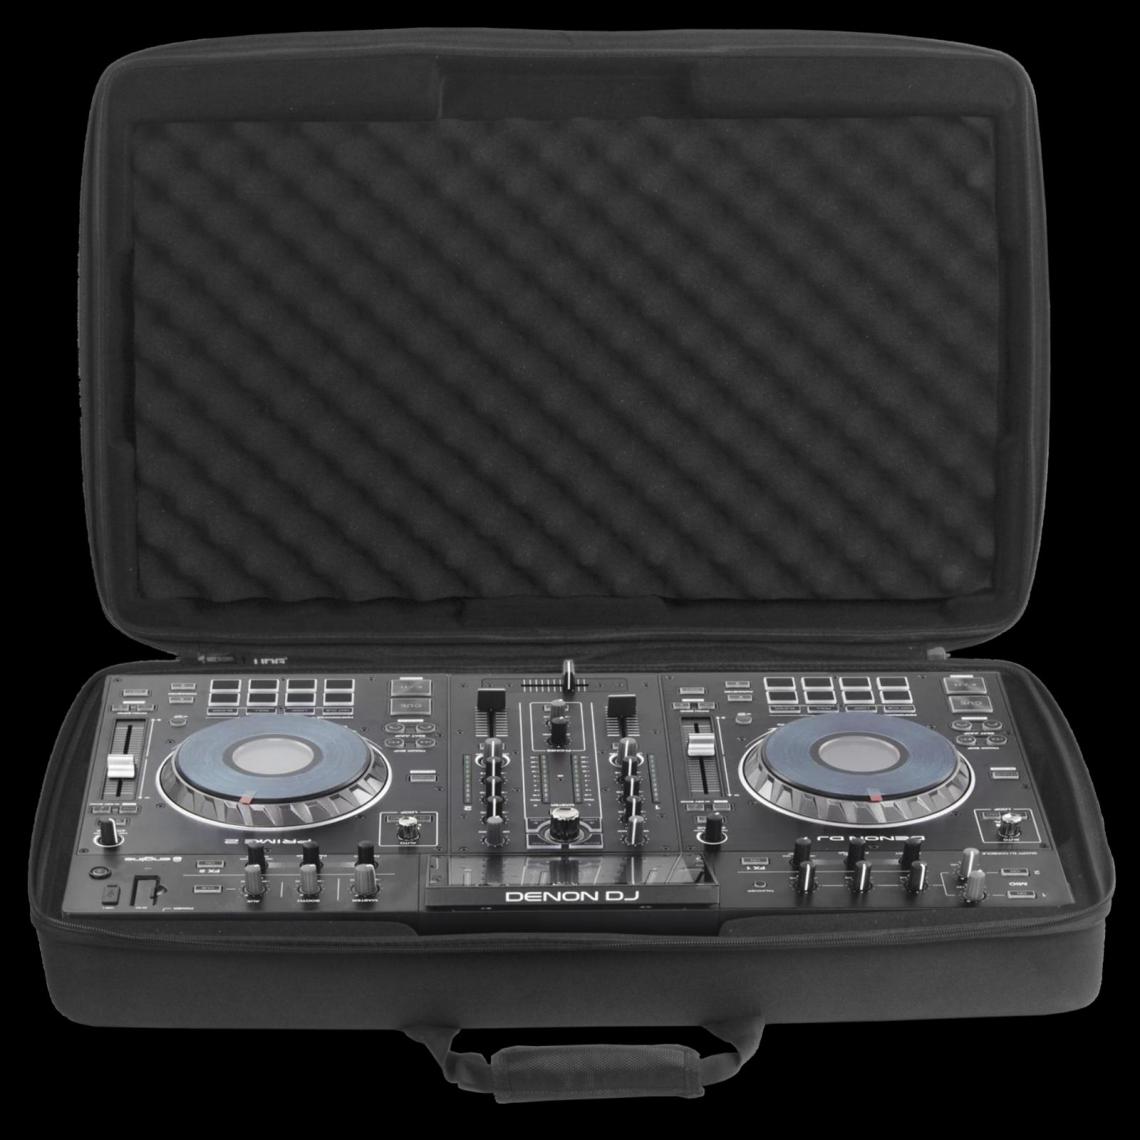 Udg - UDG U 8311 BL - UDG Creator Denon DJ Prime 2 Hardcase - Accessoires DJ